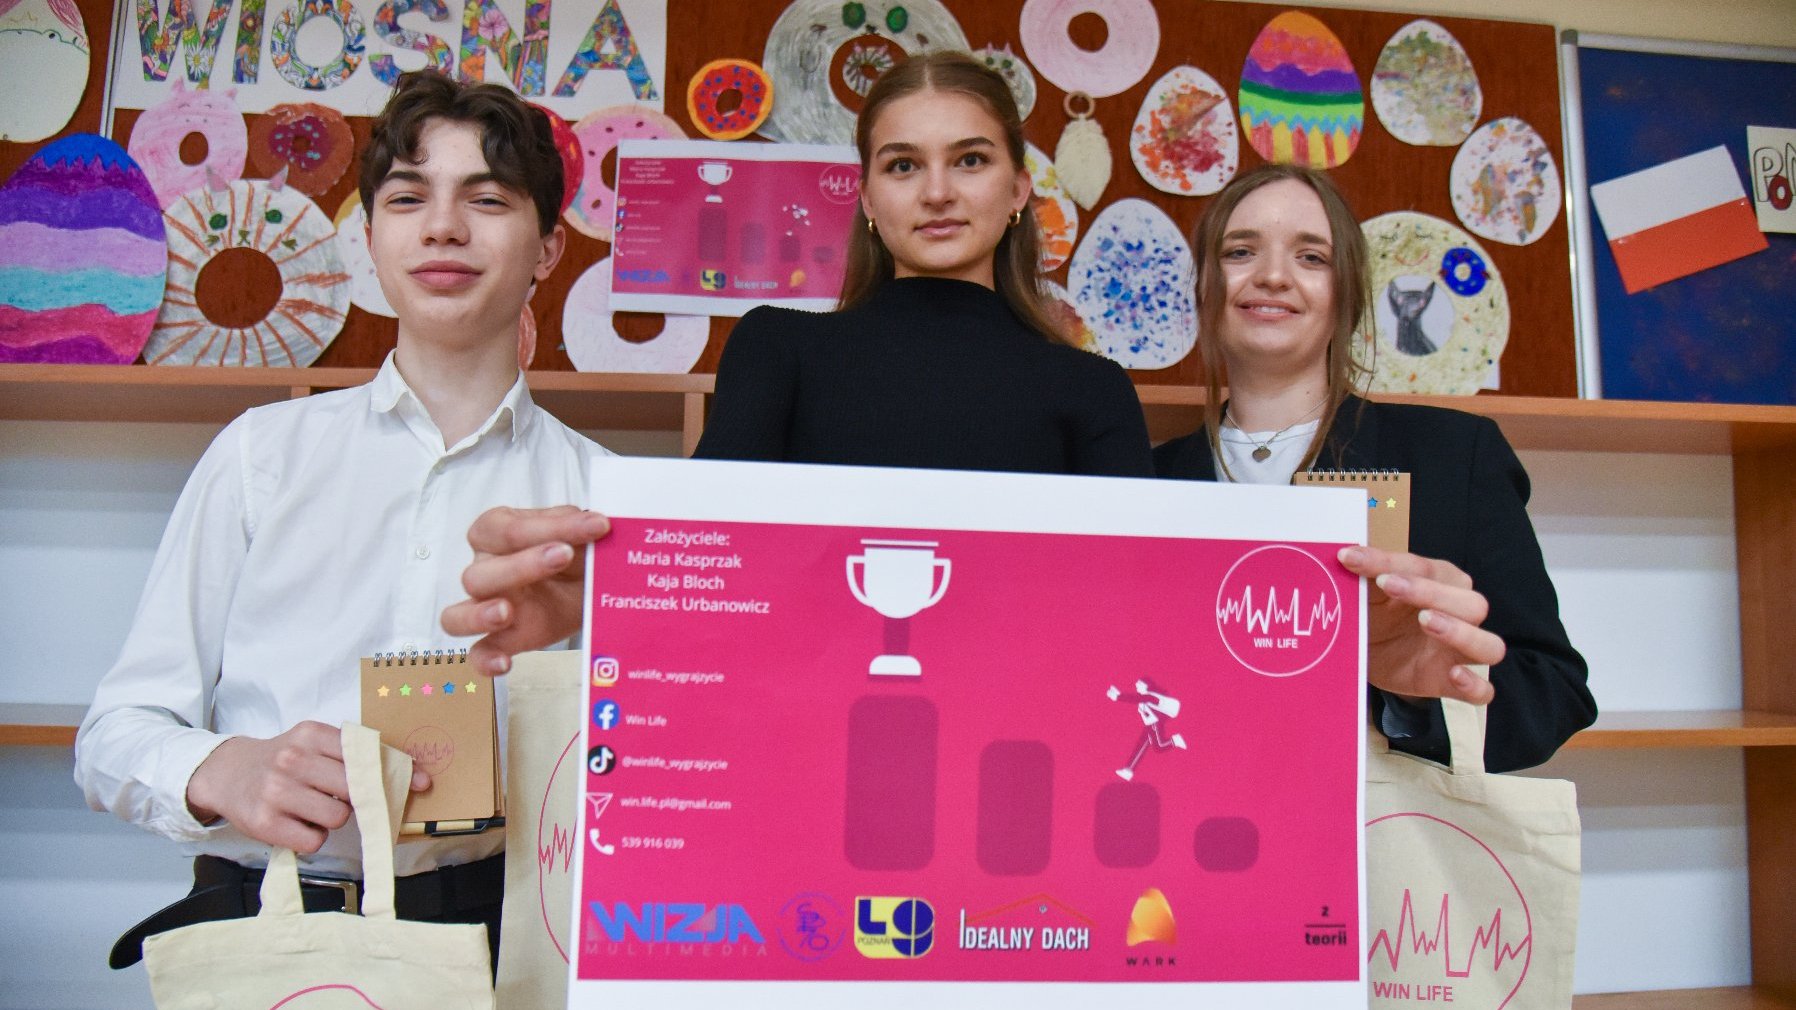 Na zdjęciu troje uczniów trzymających przed sobą różowy plakat